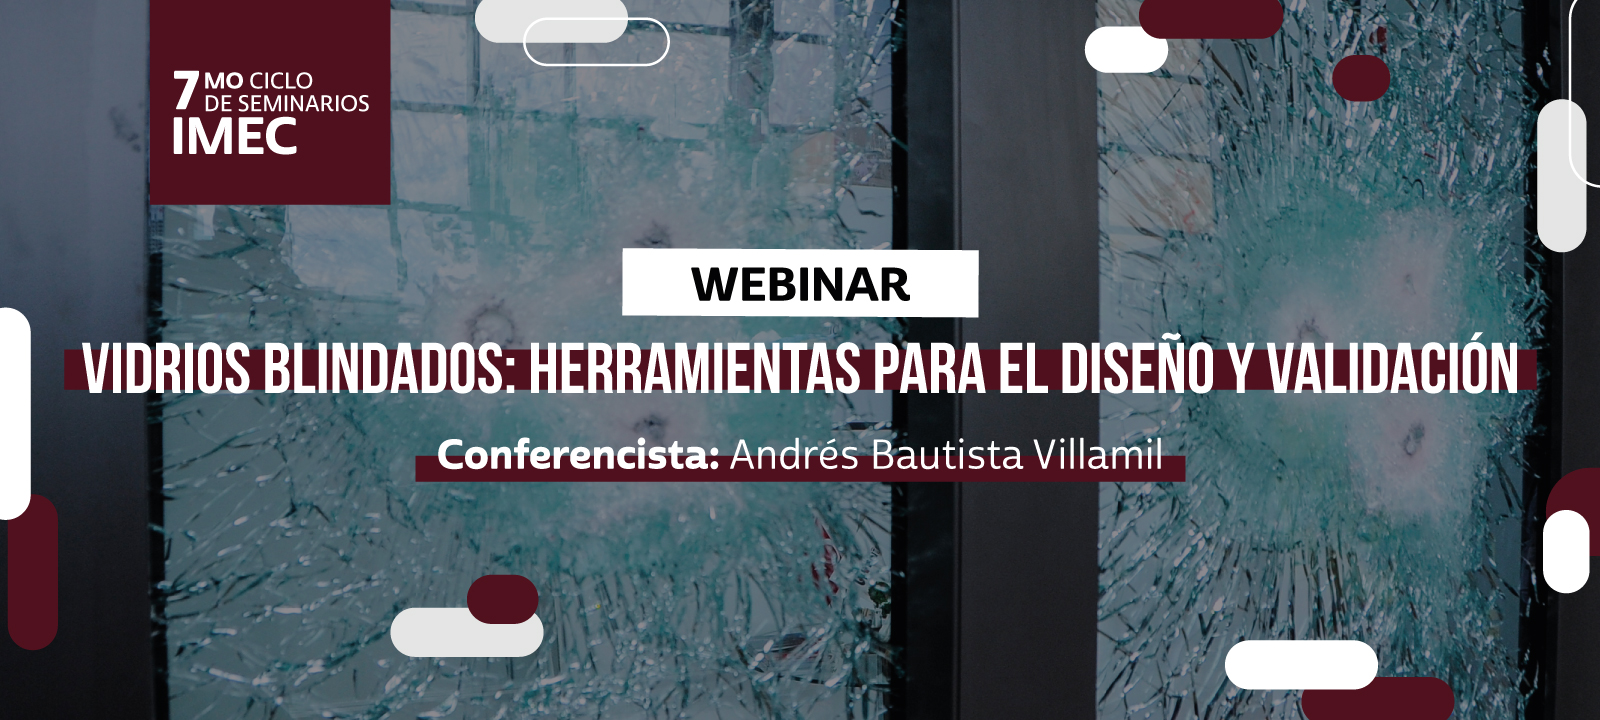 Vidrios blindados: herramientas para el diseño y validación Séptima Ciclo de conferencias IMEC Uniandes Andres Bautista Villamil 